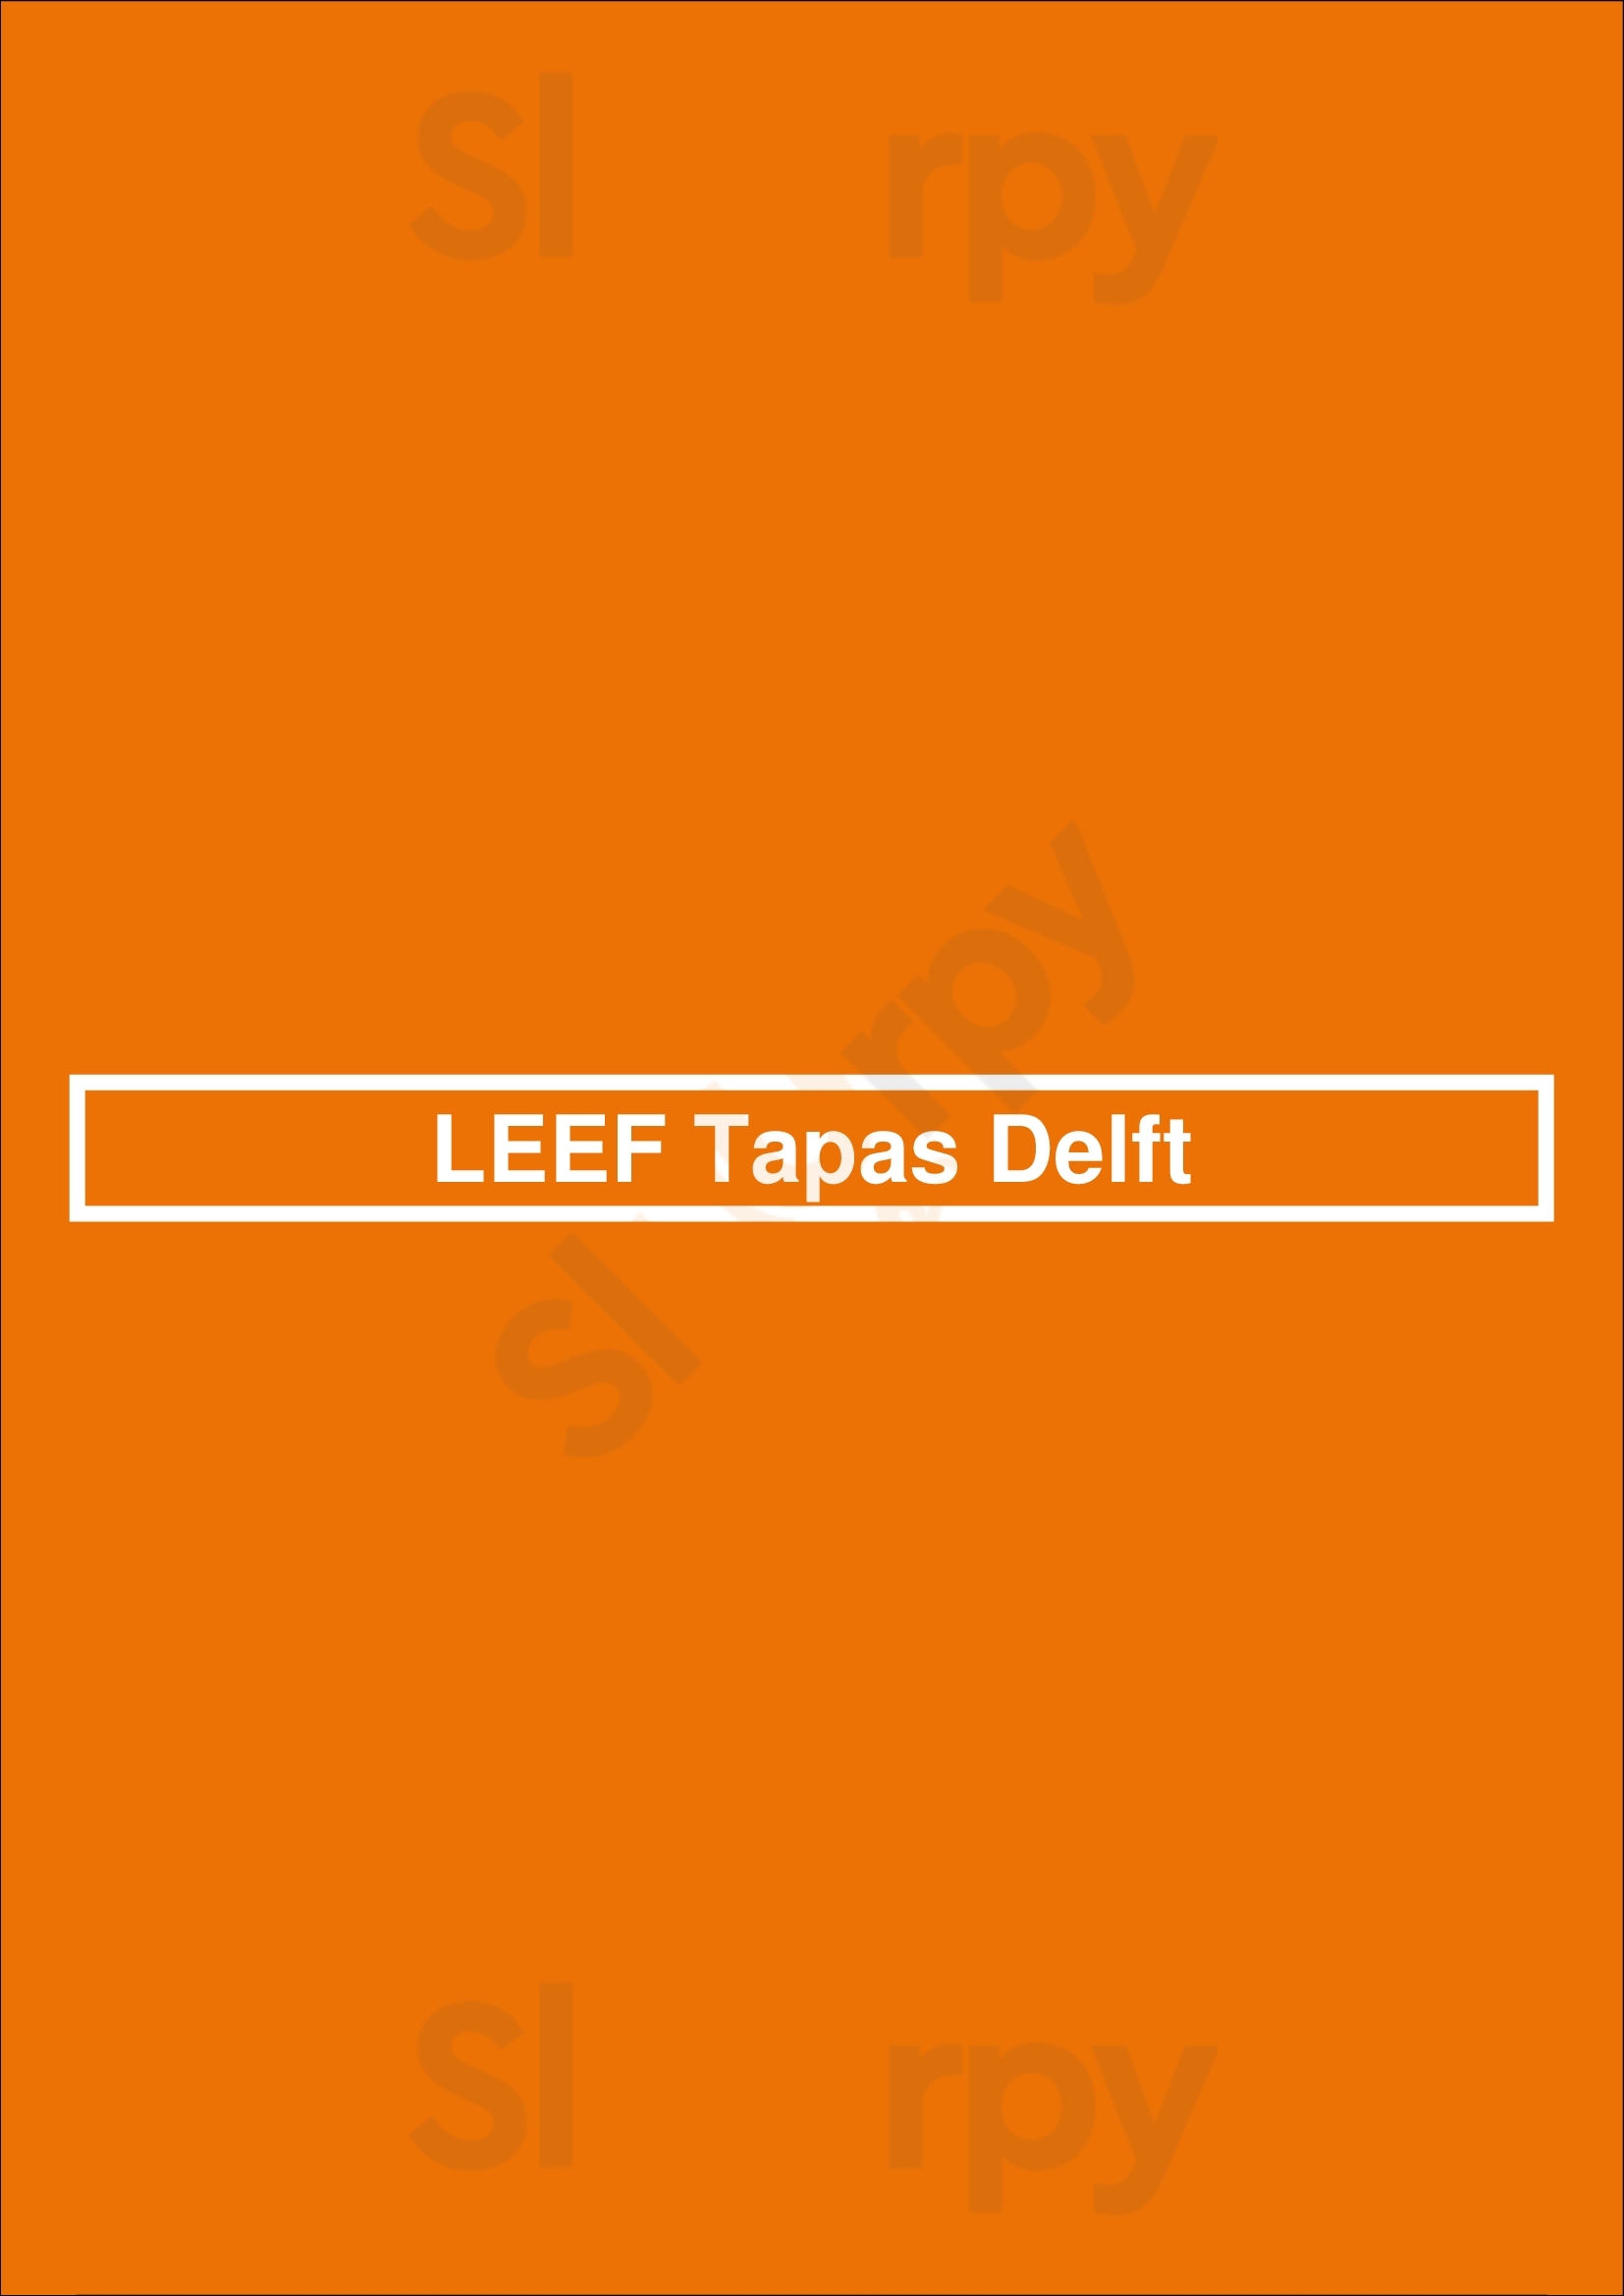 Leef Tapas Delft Delft Menu - 1